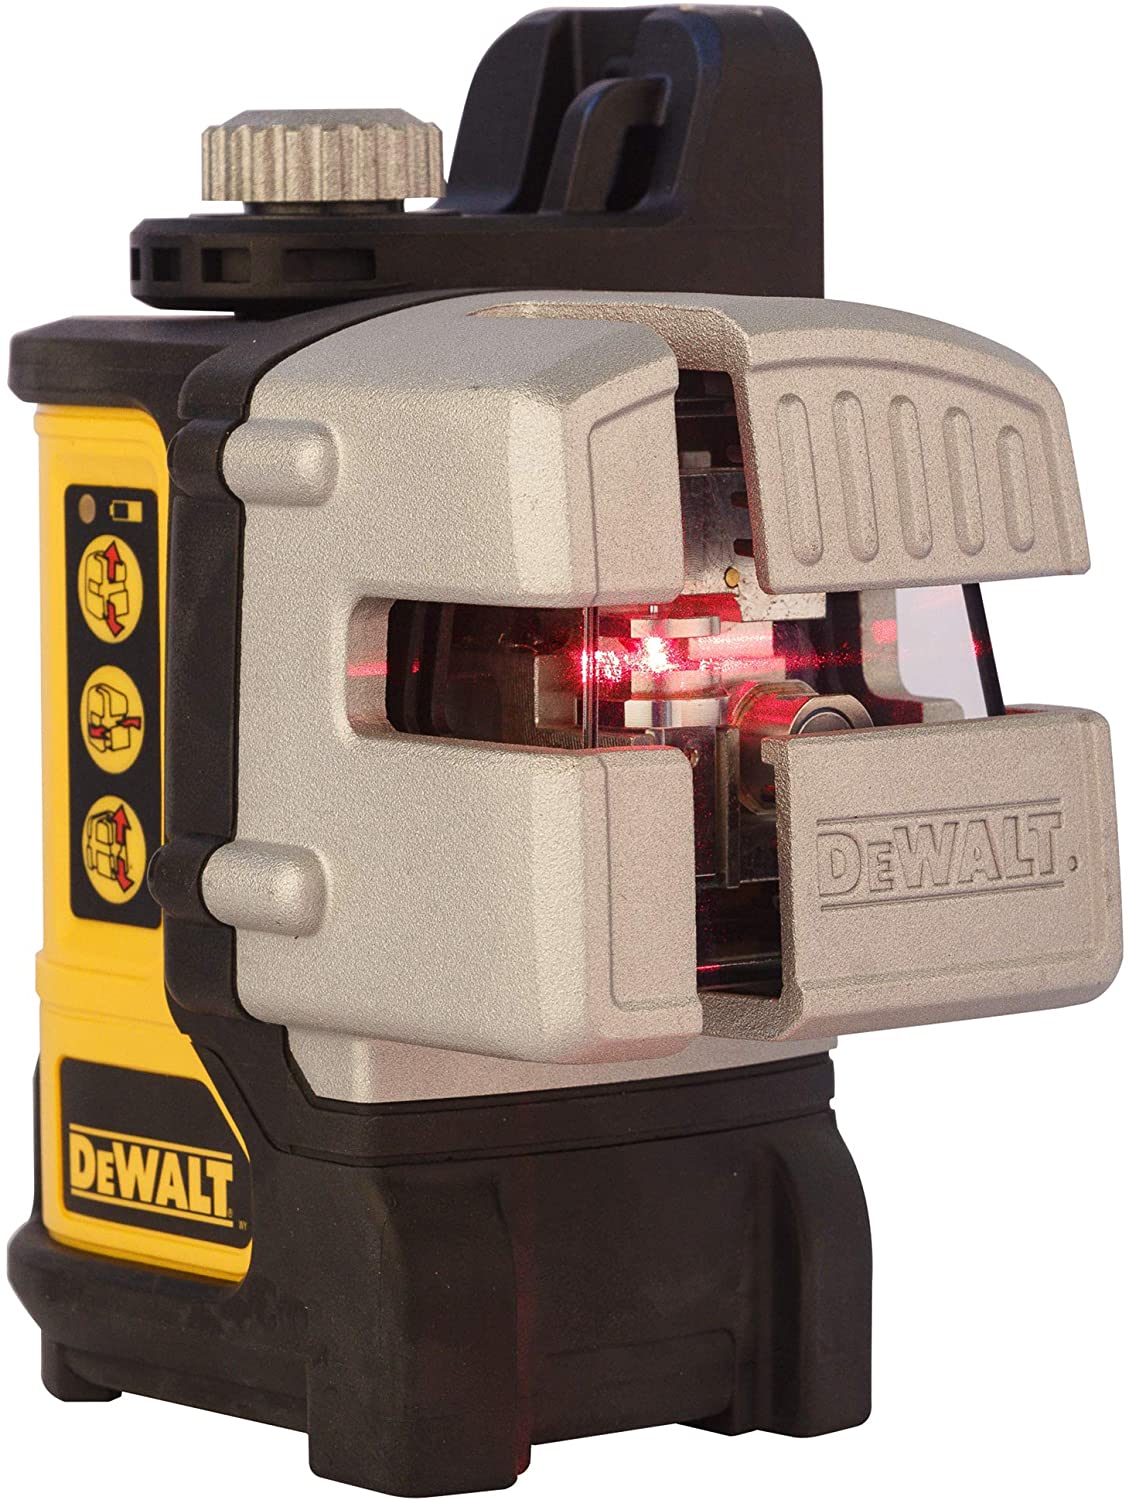 DeWALT multi-line laser DW089K, cross line laser (black/grey, carrying case)